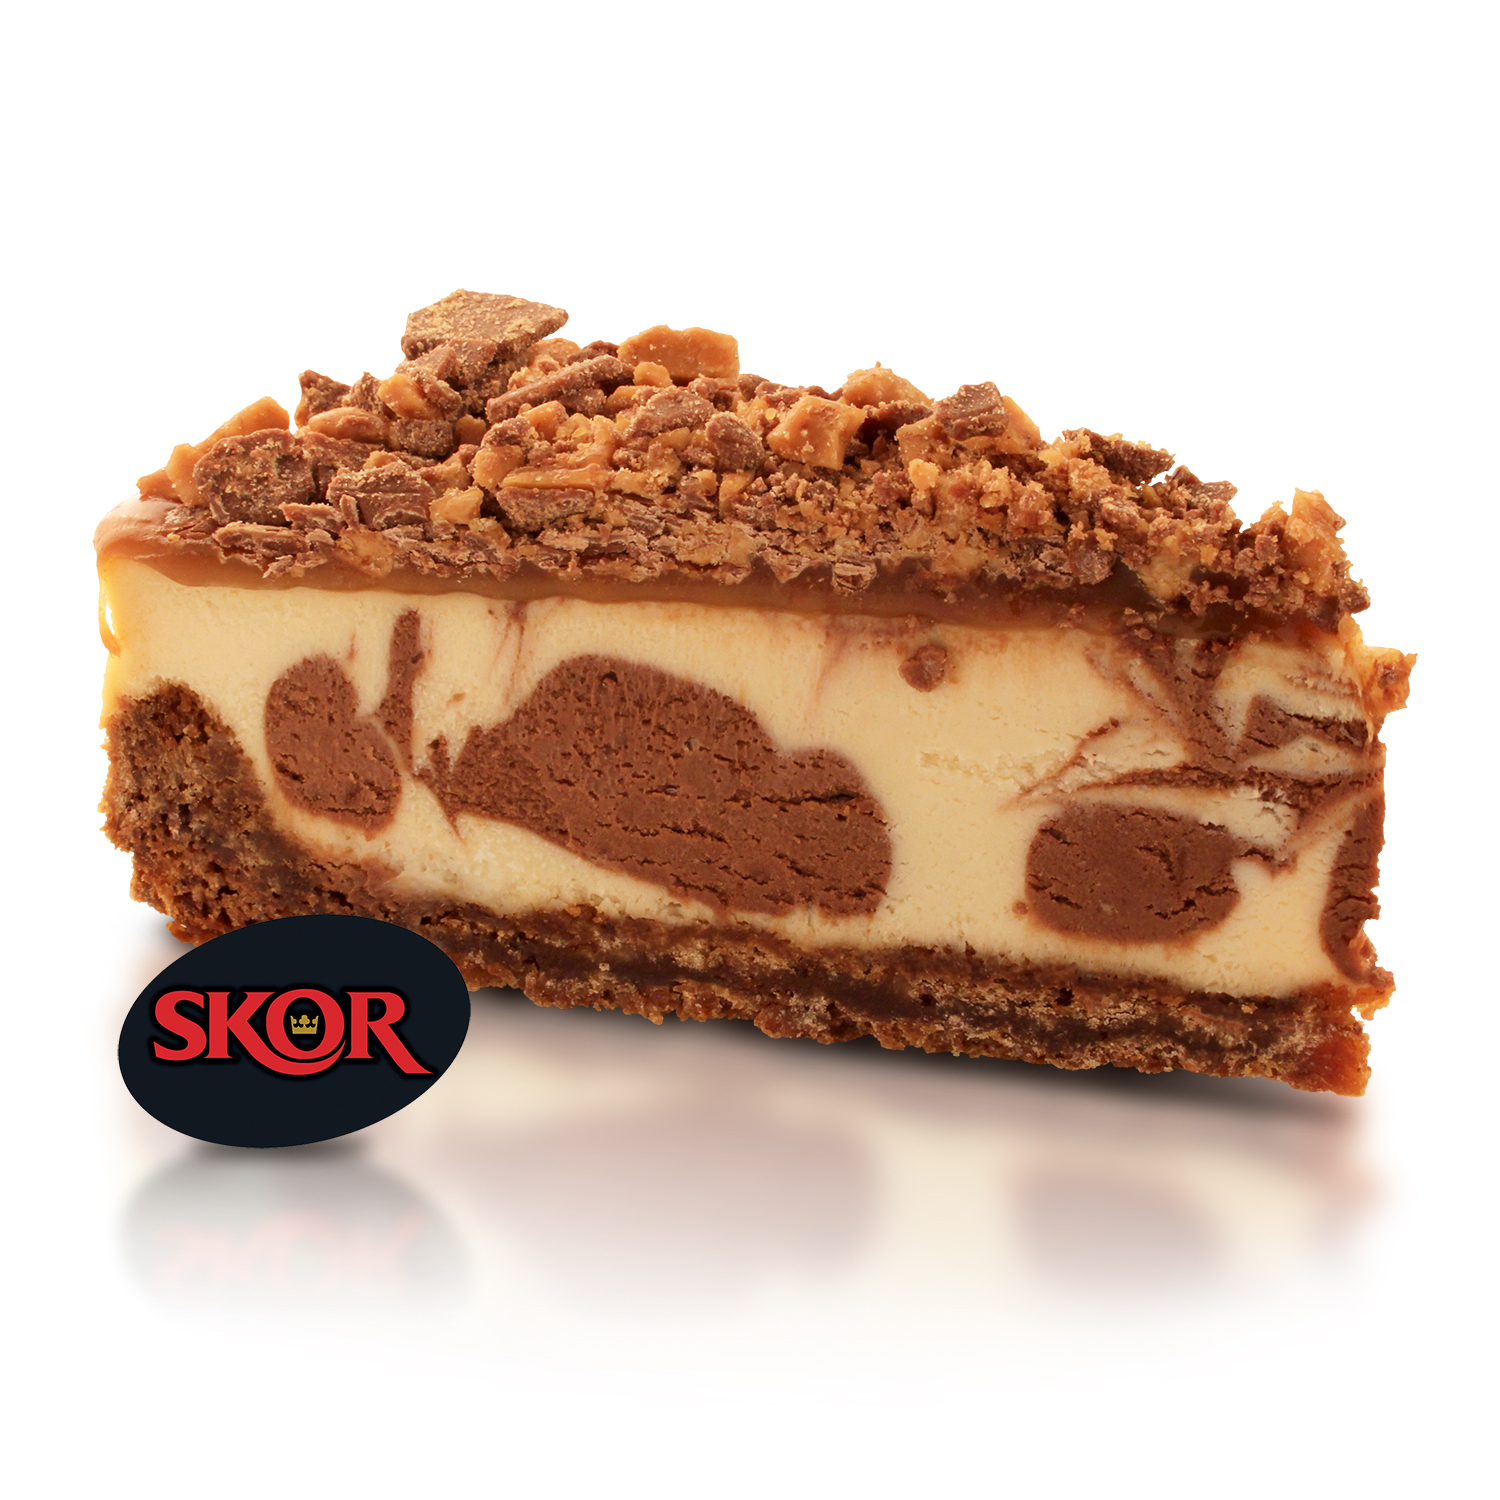 Skor Cheesecake (1) | WOW! Factor Desserts